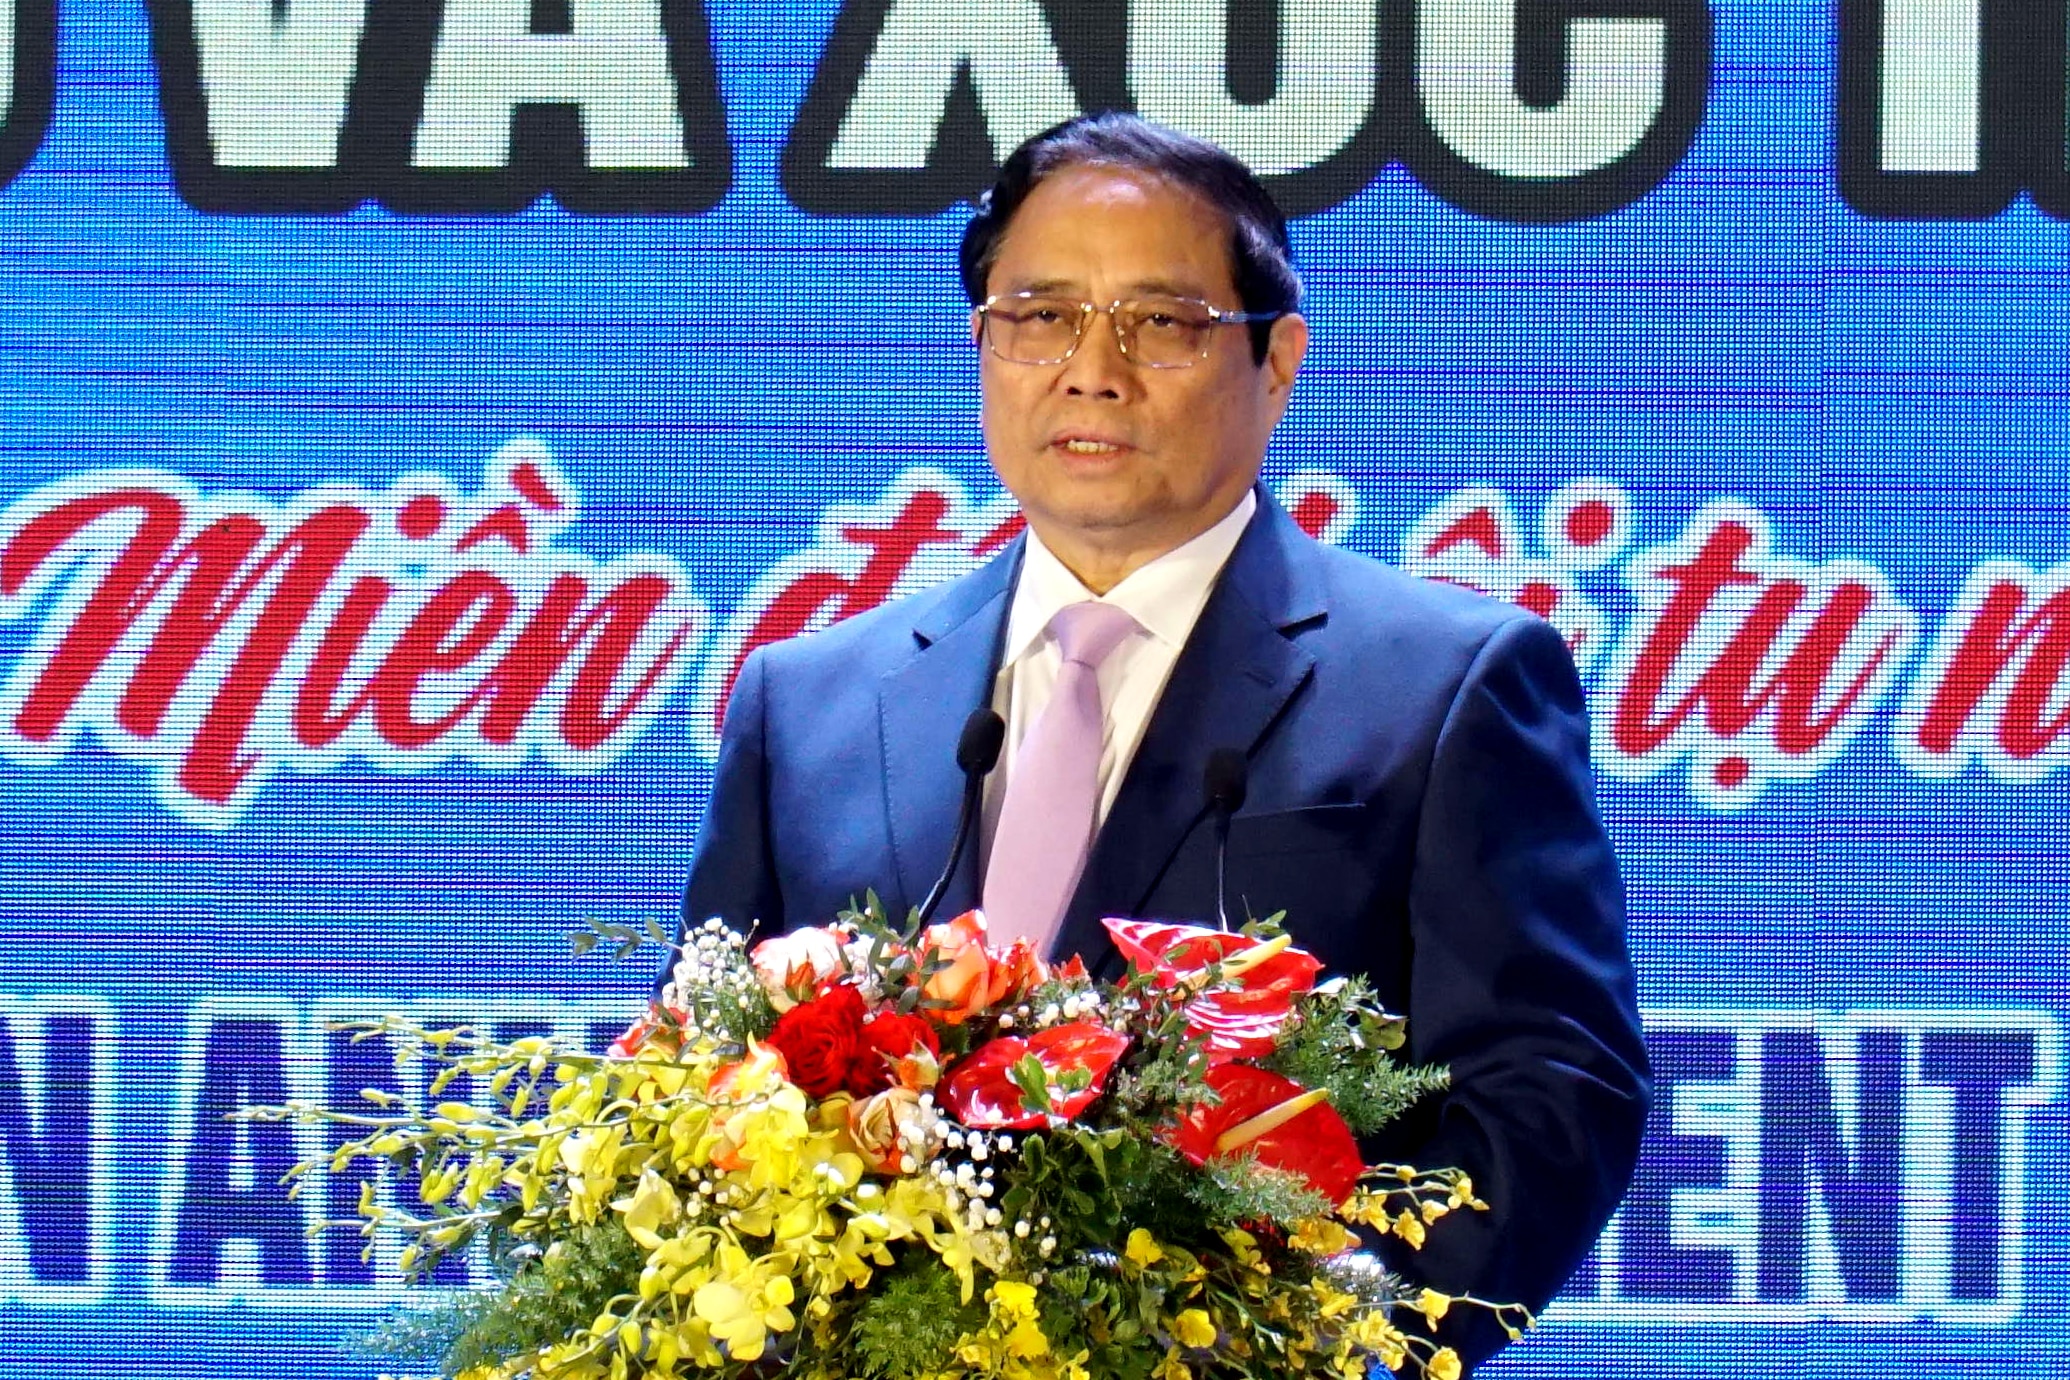 El Primer Ministro Pham Minh Chinh habló en la conferencia sobre la planificación de la provincia de Ninh Thuan para el período 2021-2030, la visión hasta 2050 y la promoción de las inversiones organizada por el Comité Popular de la provincia de Ninh Thuan